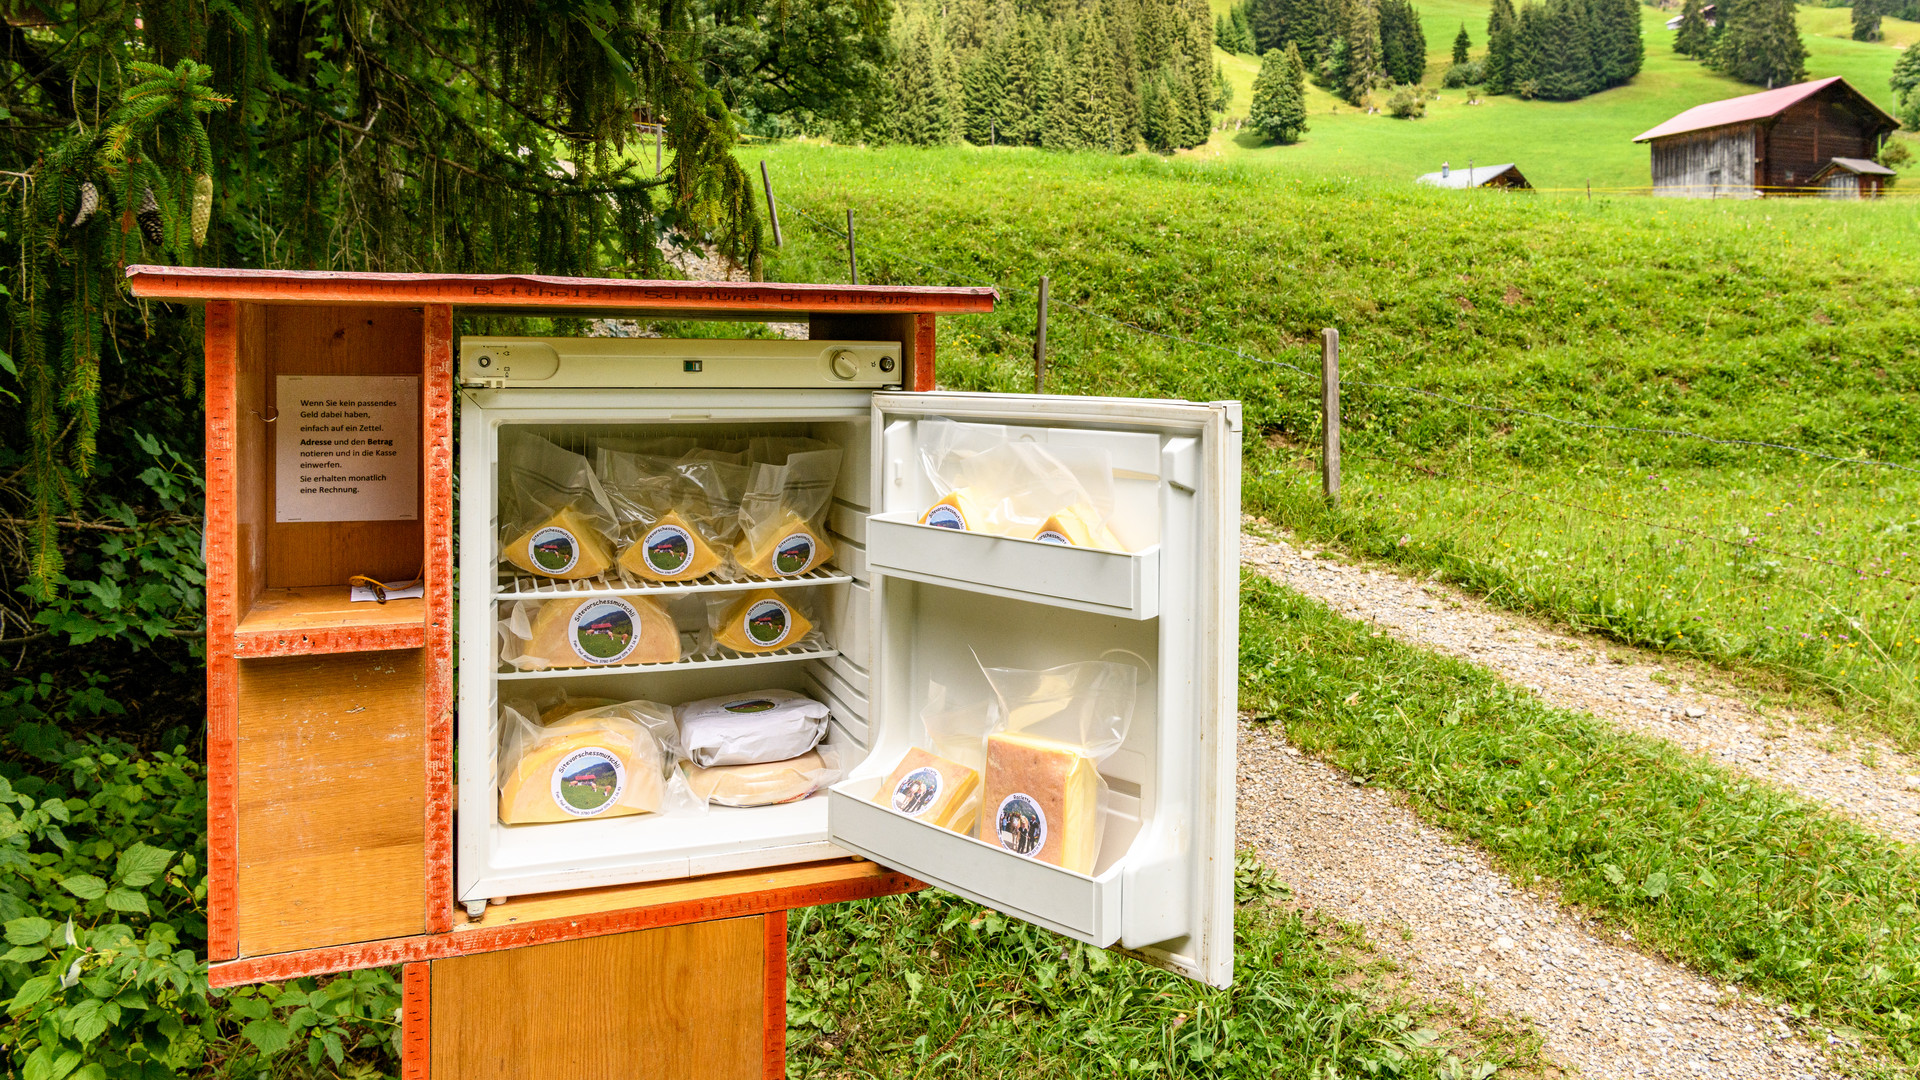 Käserei-Selbstbedienungskühlschrank mit dem Sitevorschessmutschlikäse - Schweiz